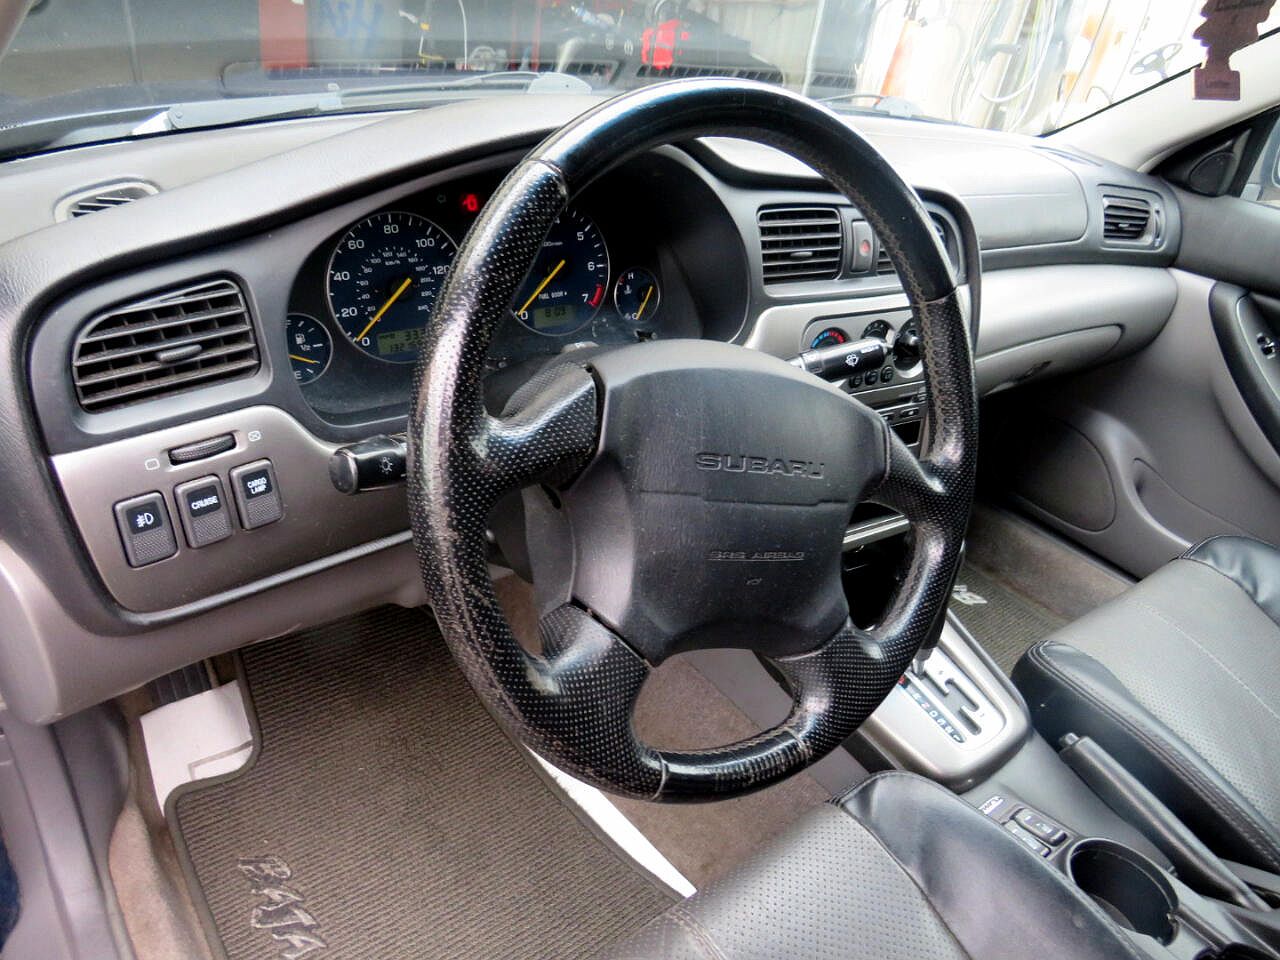 2004 Subaru Baja Turbo image 6